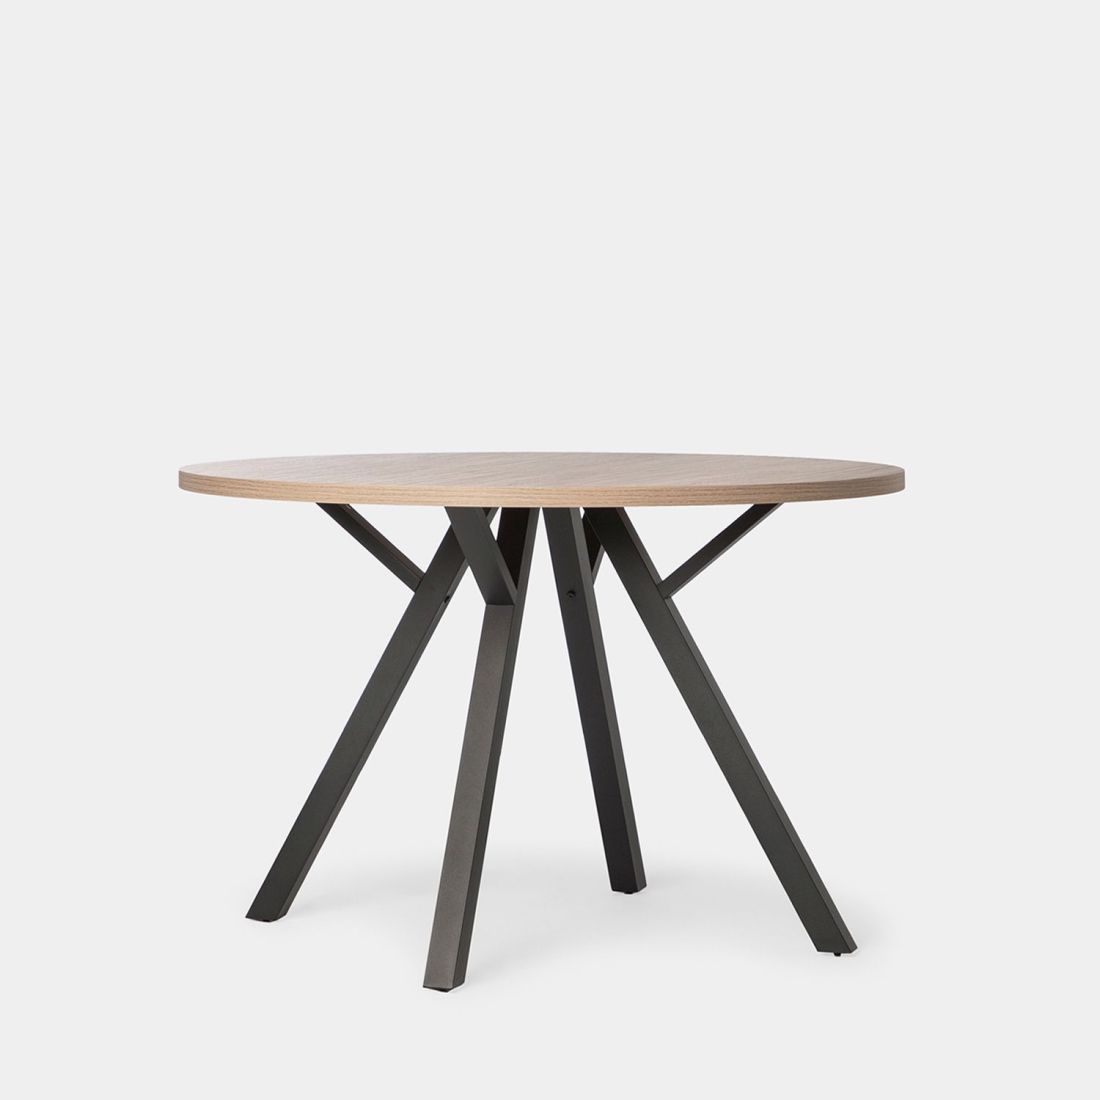 La mesa de comedor redonda Circle tiene un diseño atemporal y sencillo que nunca pasa de moda. Es apta para 6 comensales por lo que podrás vivirla y compartila con familiares y amigos en tu salón